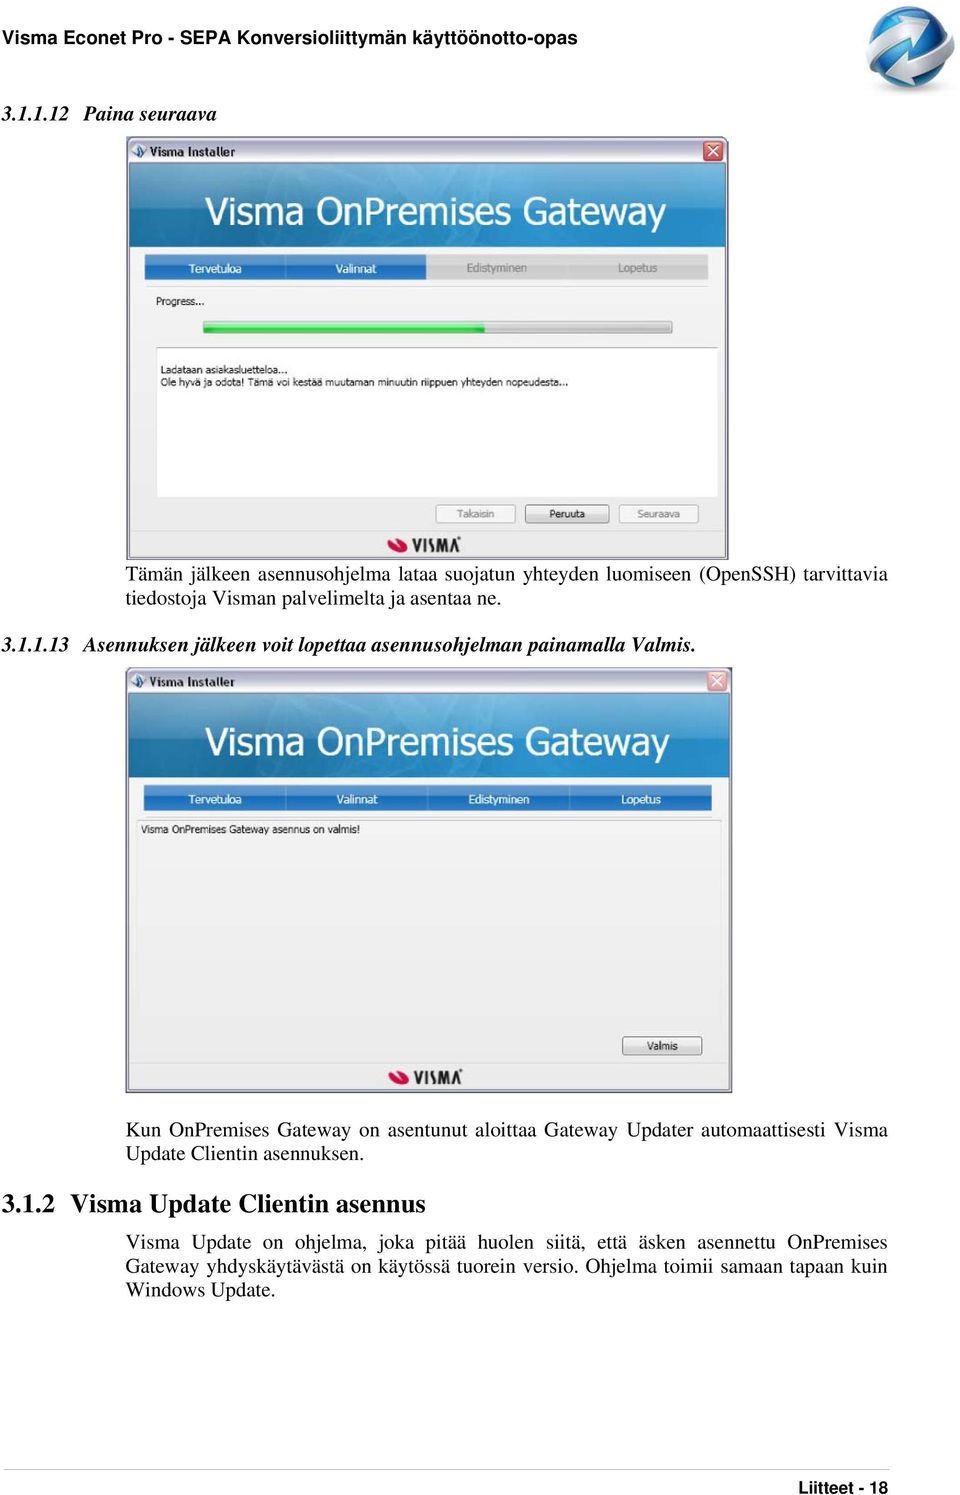 Kun OnPremises Gateway on asentunut aloittaa Gateway Updater automaattisesti Visma Update Clientin asennuksen. 3.1.